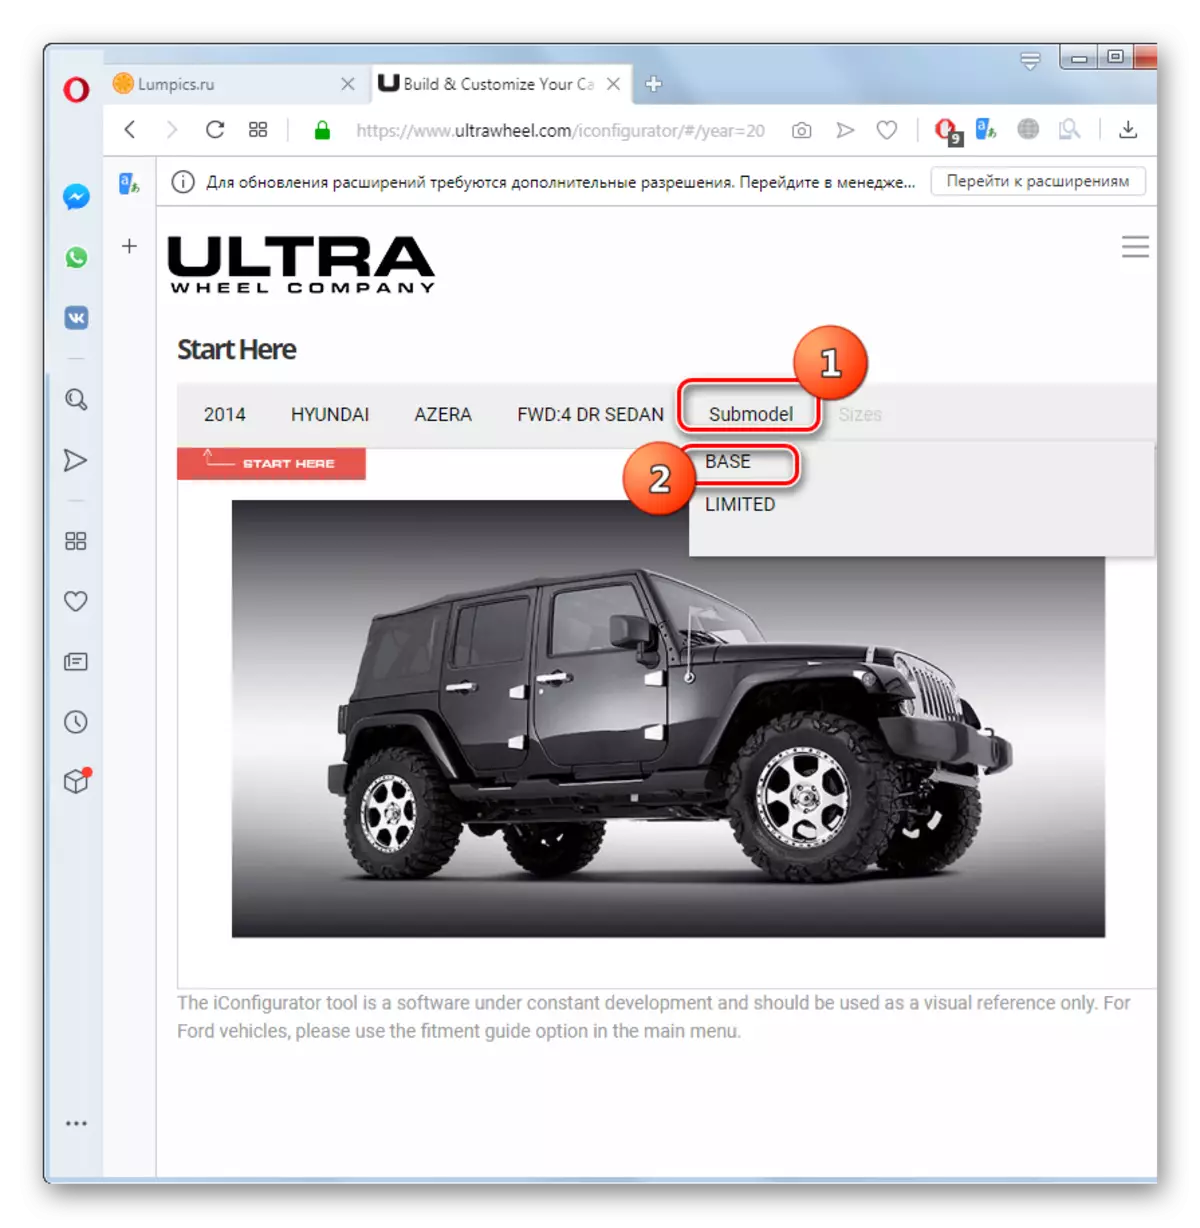 Scegliere una varietà di modelli di auto sul sito Web Ultrawheel in Opera Browser